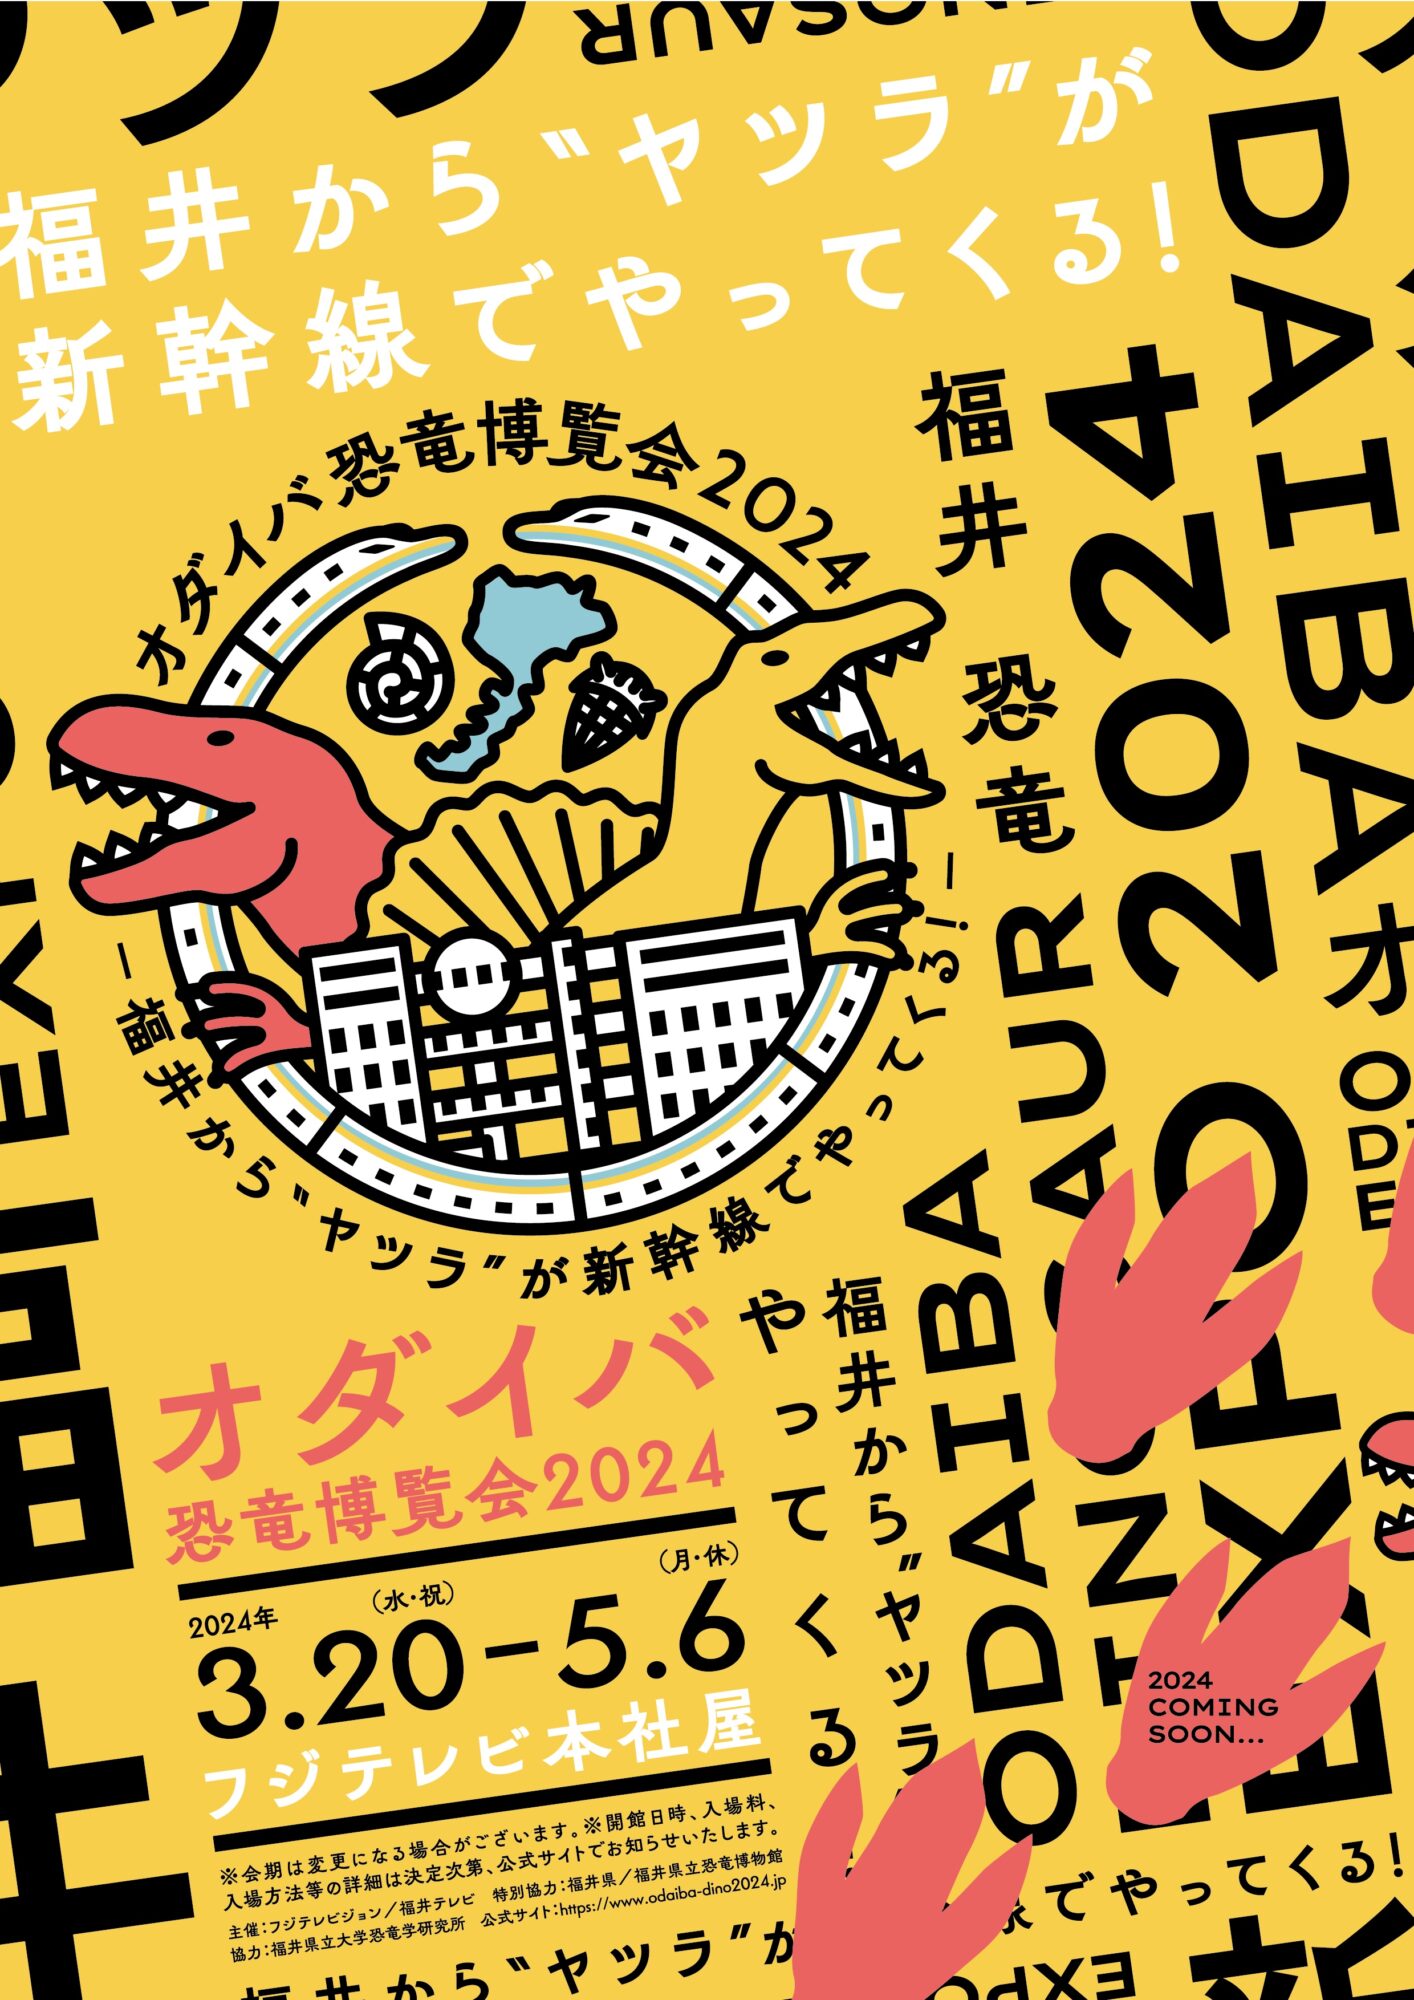 【恐竜イベント2024】「オダイバ恐竜博覧会2024 ー福井から“ヤツラ”が新幹線でやってくる！ー」 2024年春